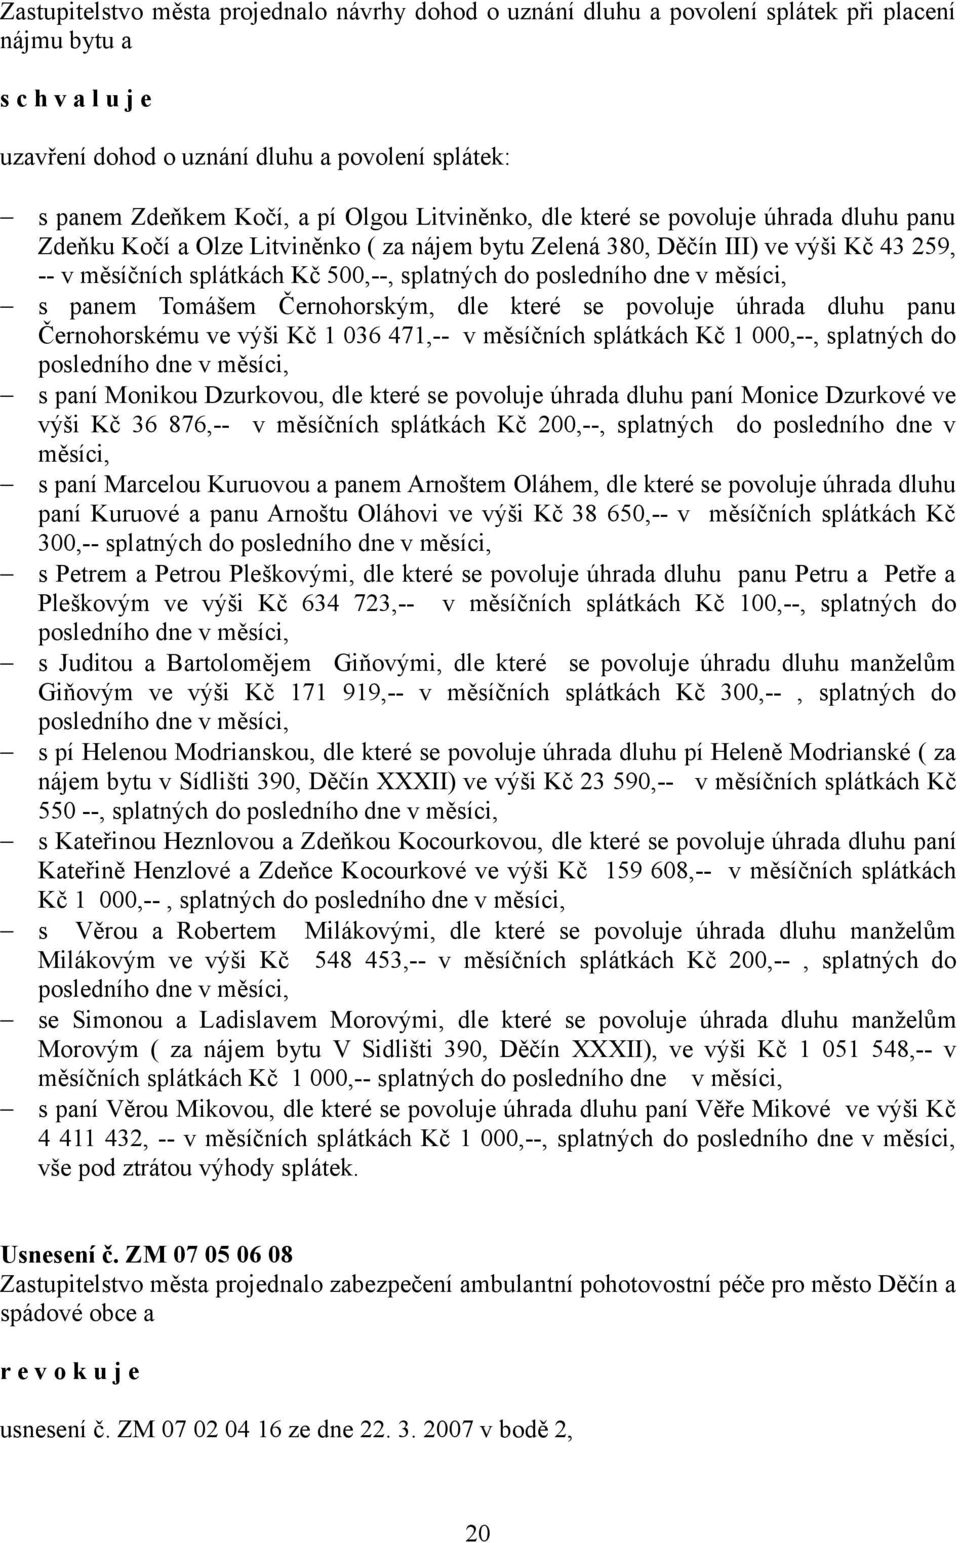 měsíci, s panem Tomášem Černohorským, dle které se povoluje úhrada dluhu panu Černohorskému ve výši Kč 1 036 471,-- v měsíčních splátkách Kč 1 000,--, splatných do posledního dne v měsíci, s paní